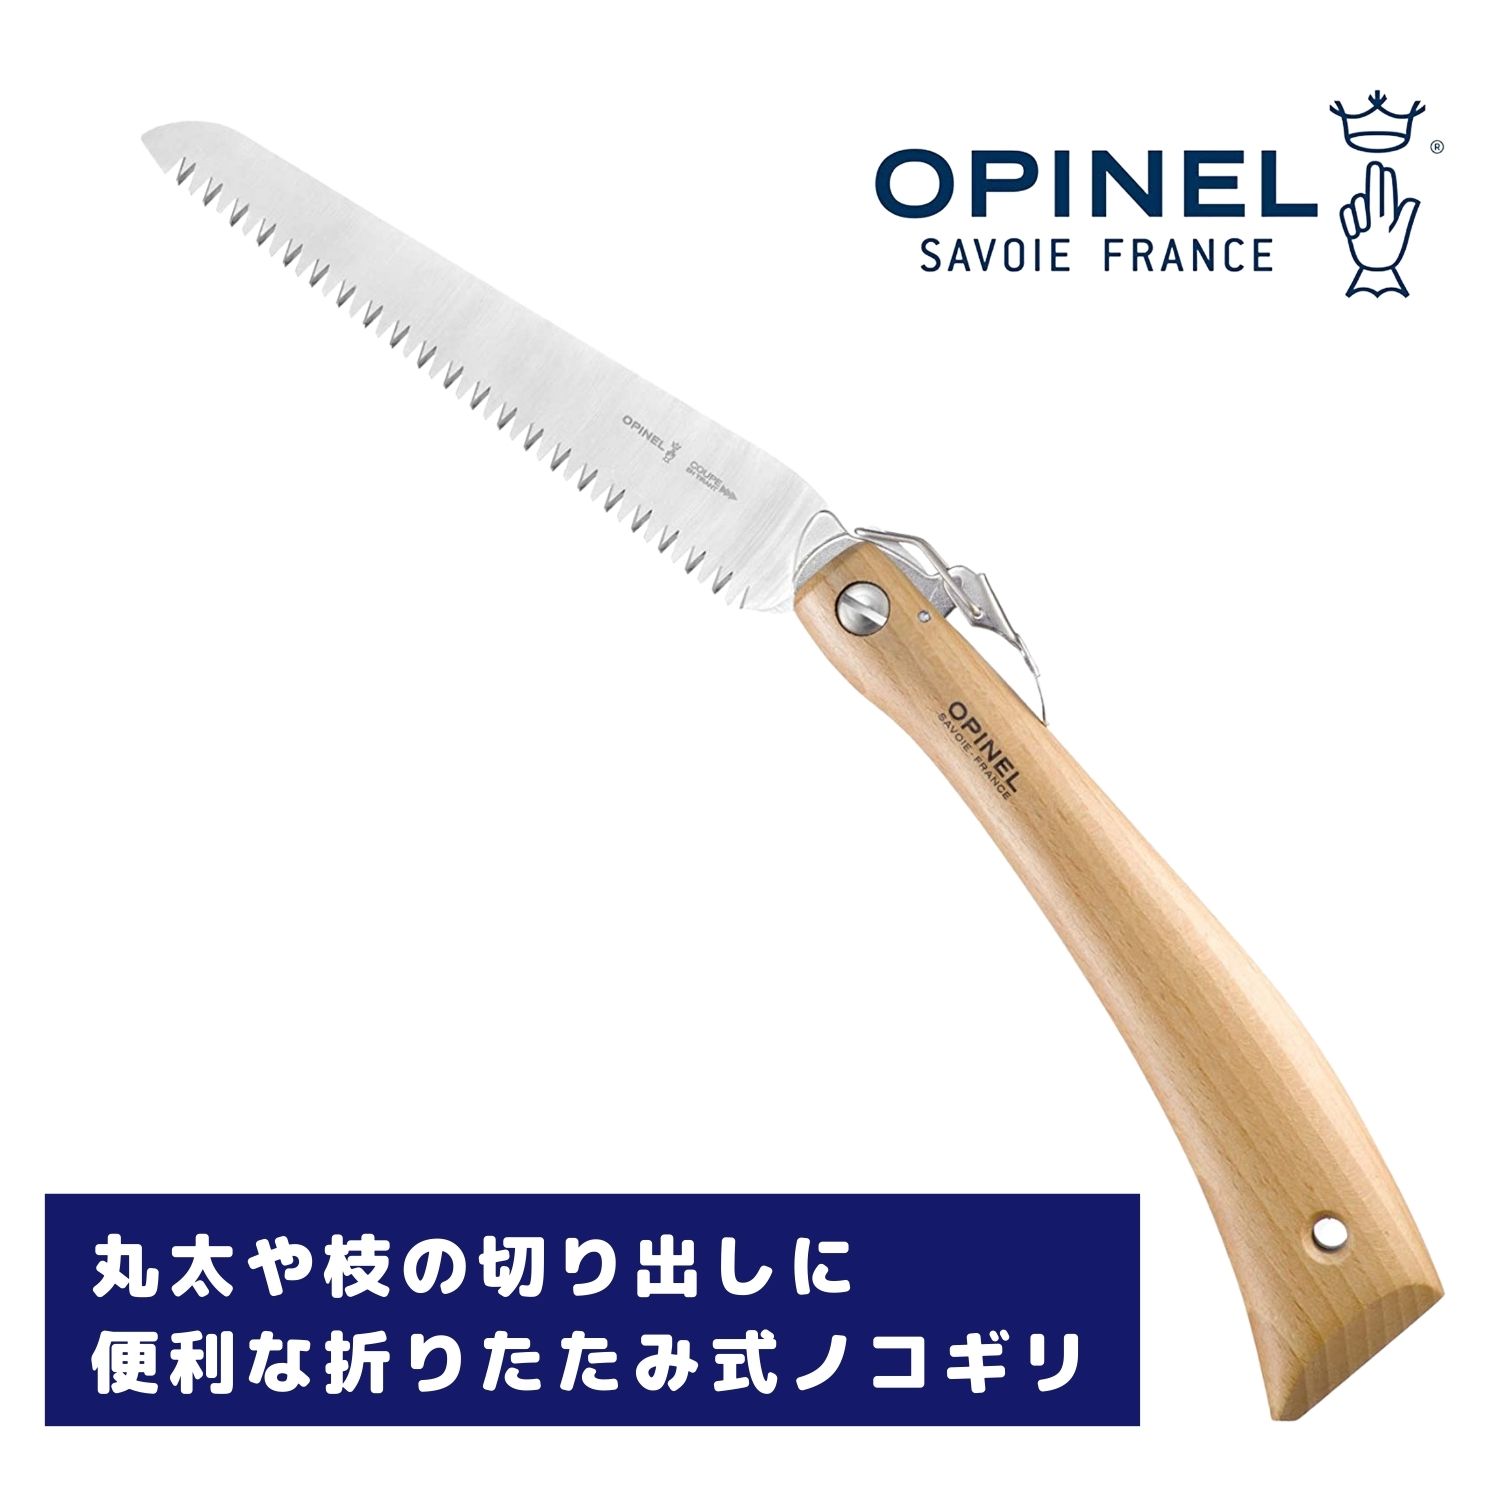 OPINEL(オピネル) フォールディングノコギリ #18 41516　ステンレス オピネルナイフ 折り畳み式 かっこいい 携帯しやすい 木柄 新生活